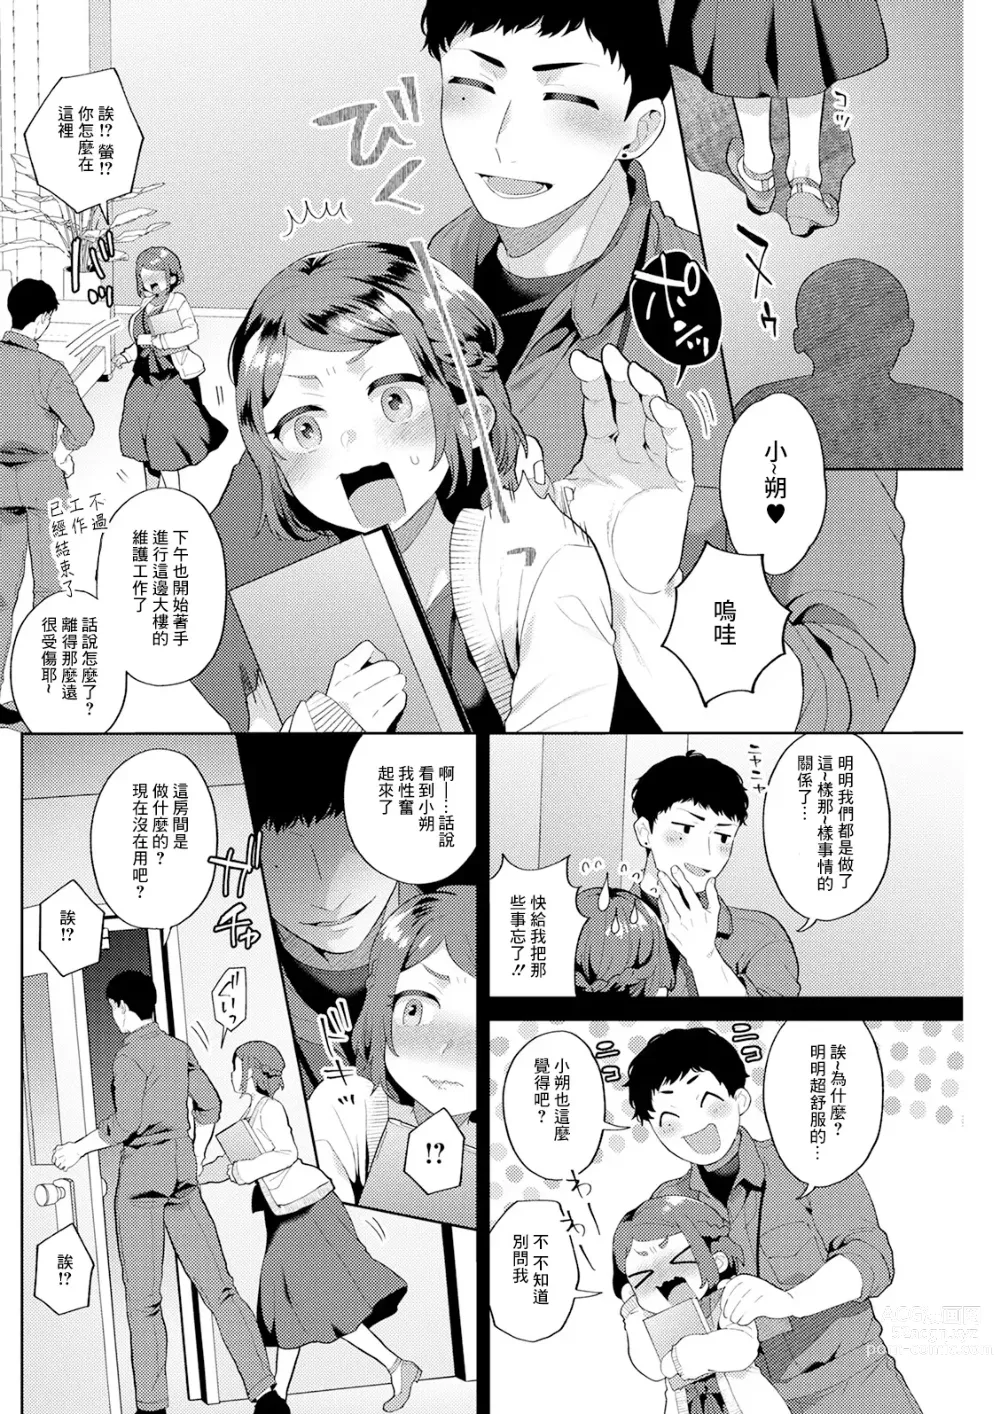 Page 6 of manga スタートライン 後編